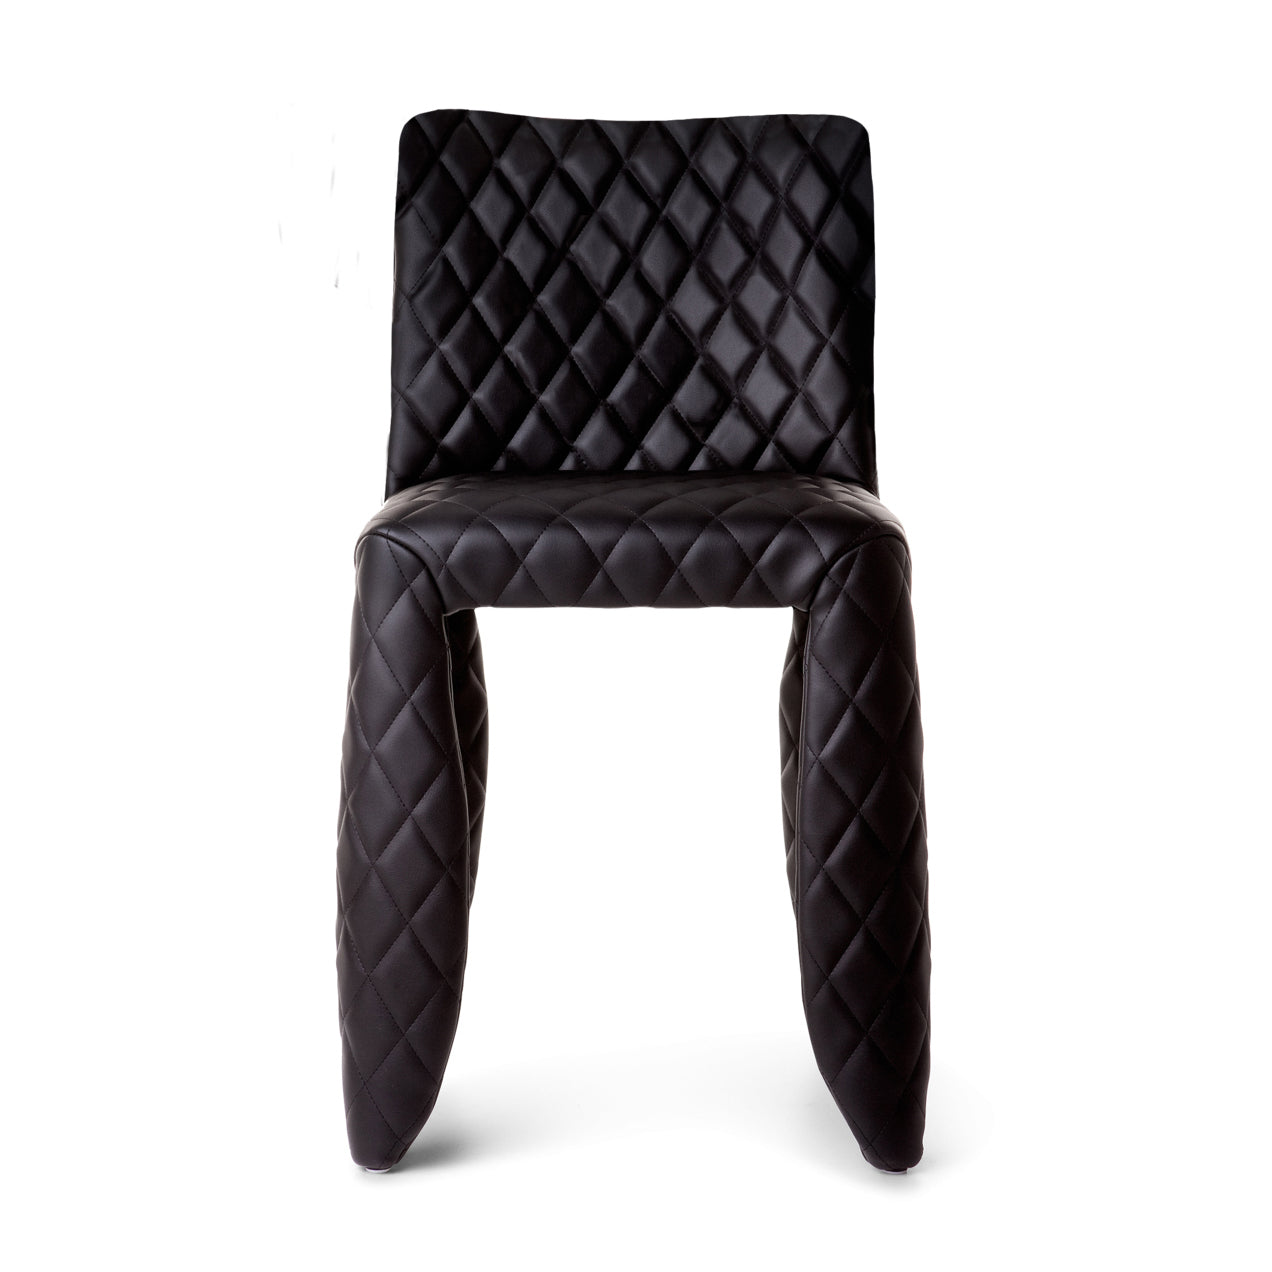 Moooi Monster Modern Chair by Marcel Wanders